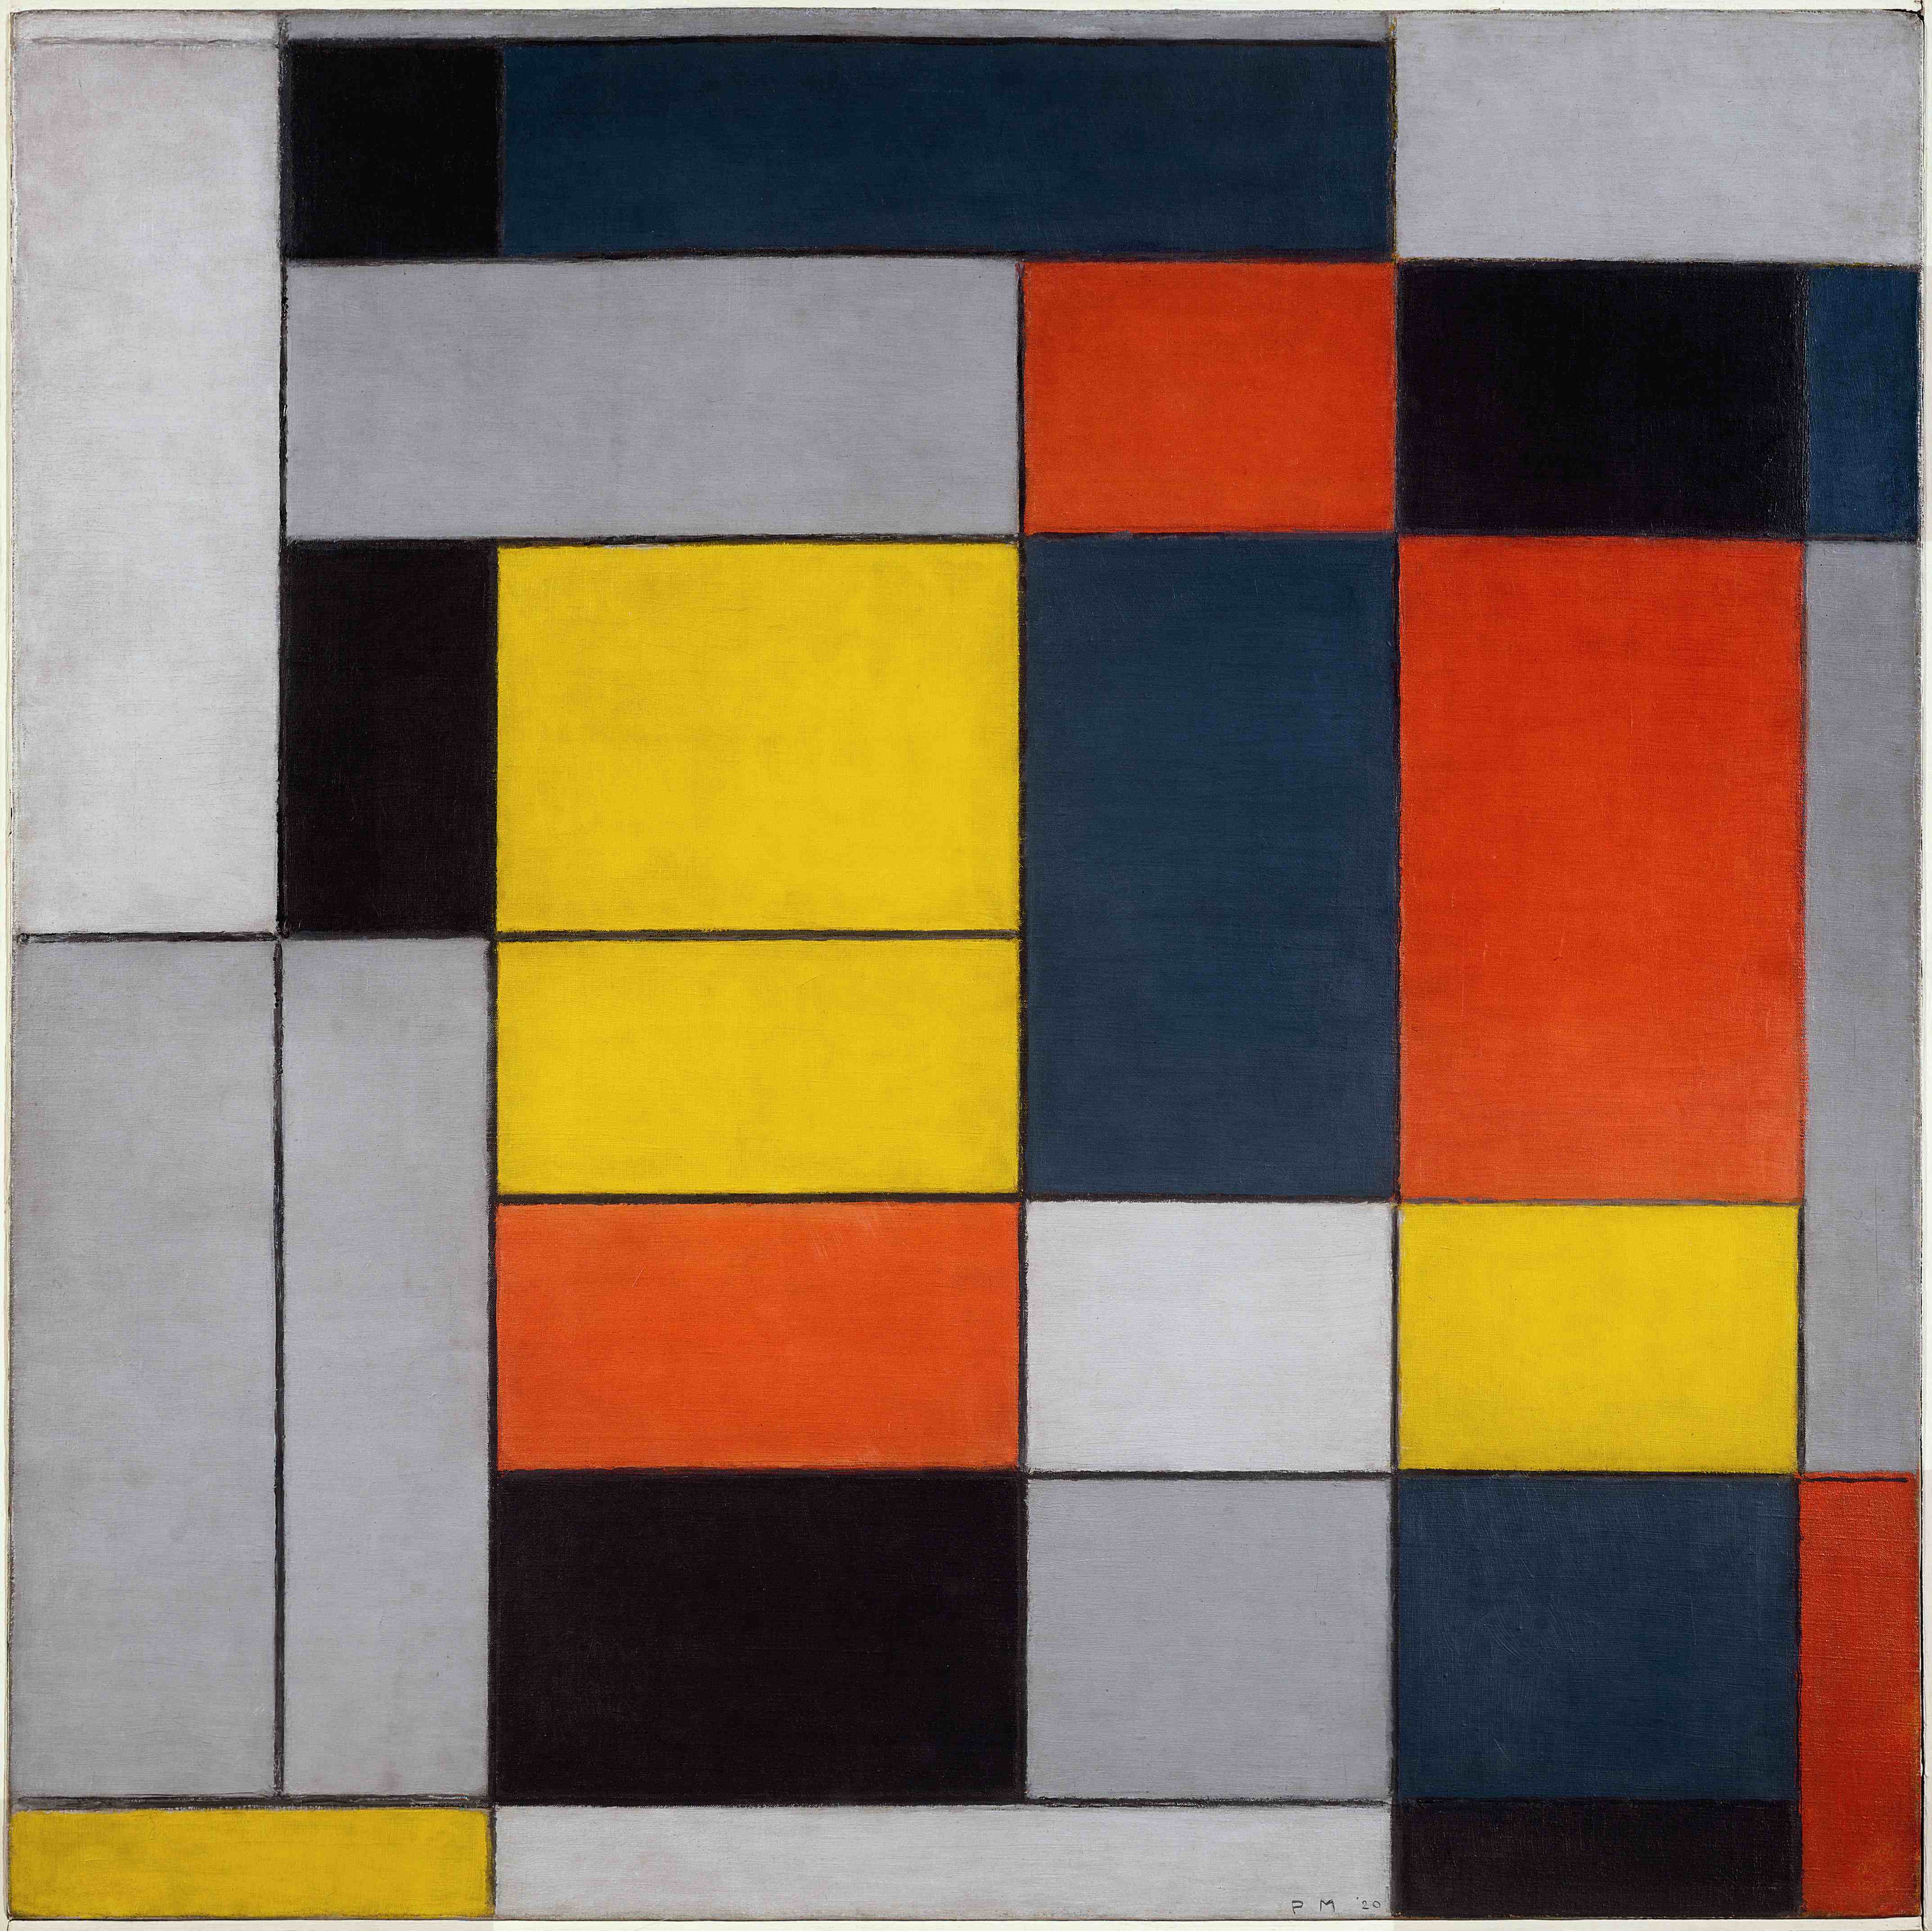 Obra De Piet Mondrian - EDULEARN